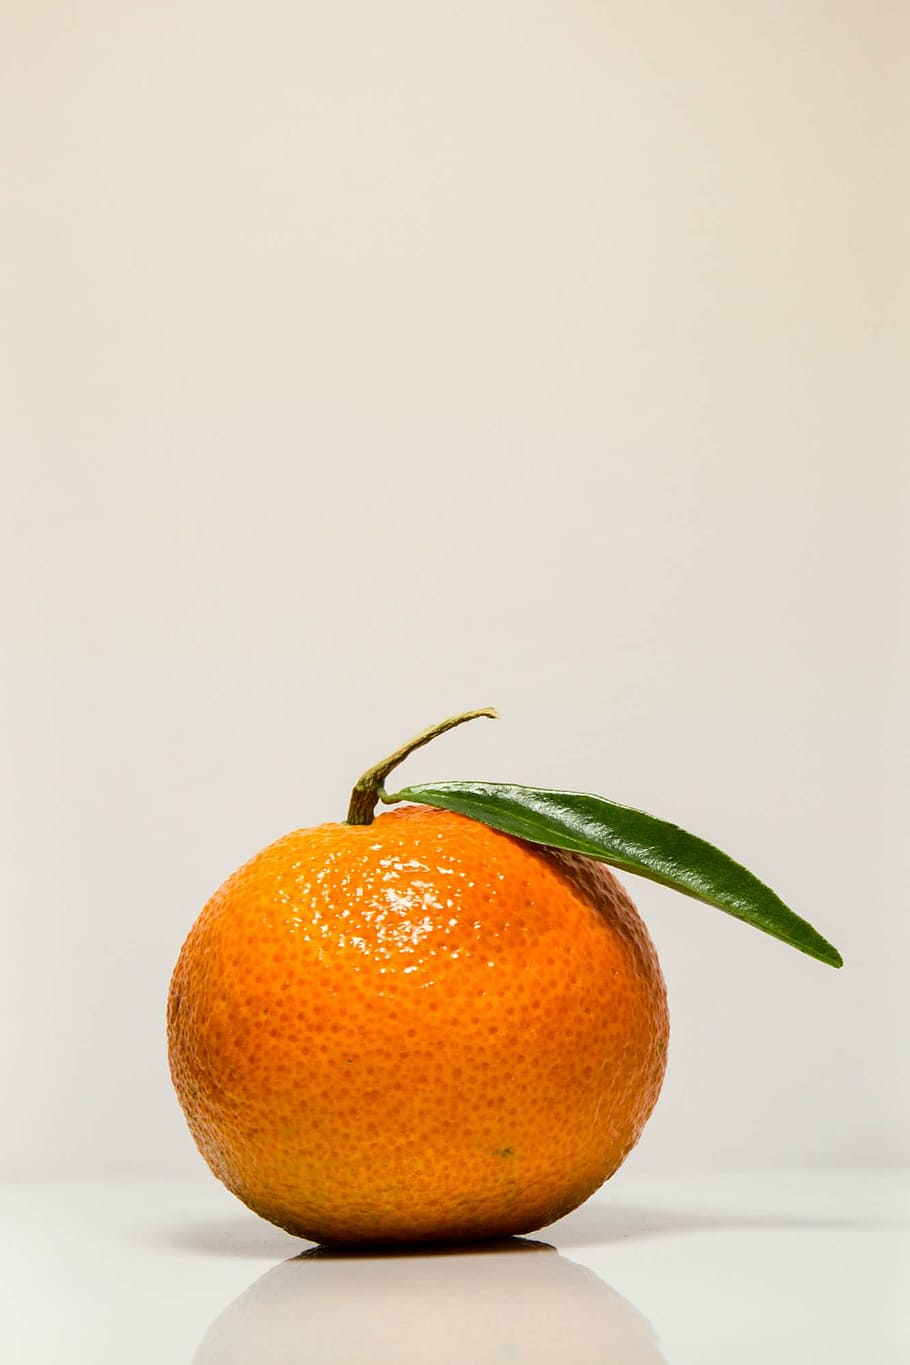 mandarin, orange, clementines, fruit, citrus, orange color, orange - fruit, citrus fruit, food, food and drink